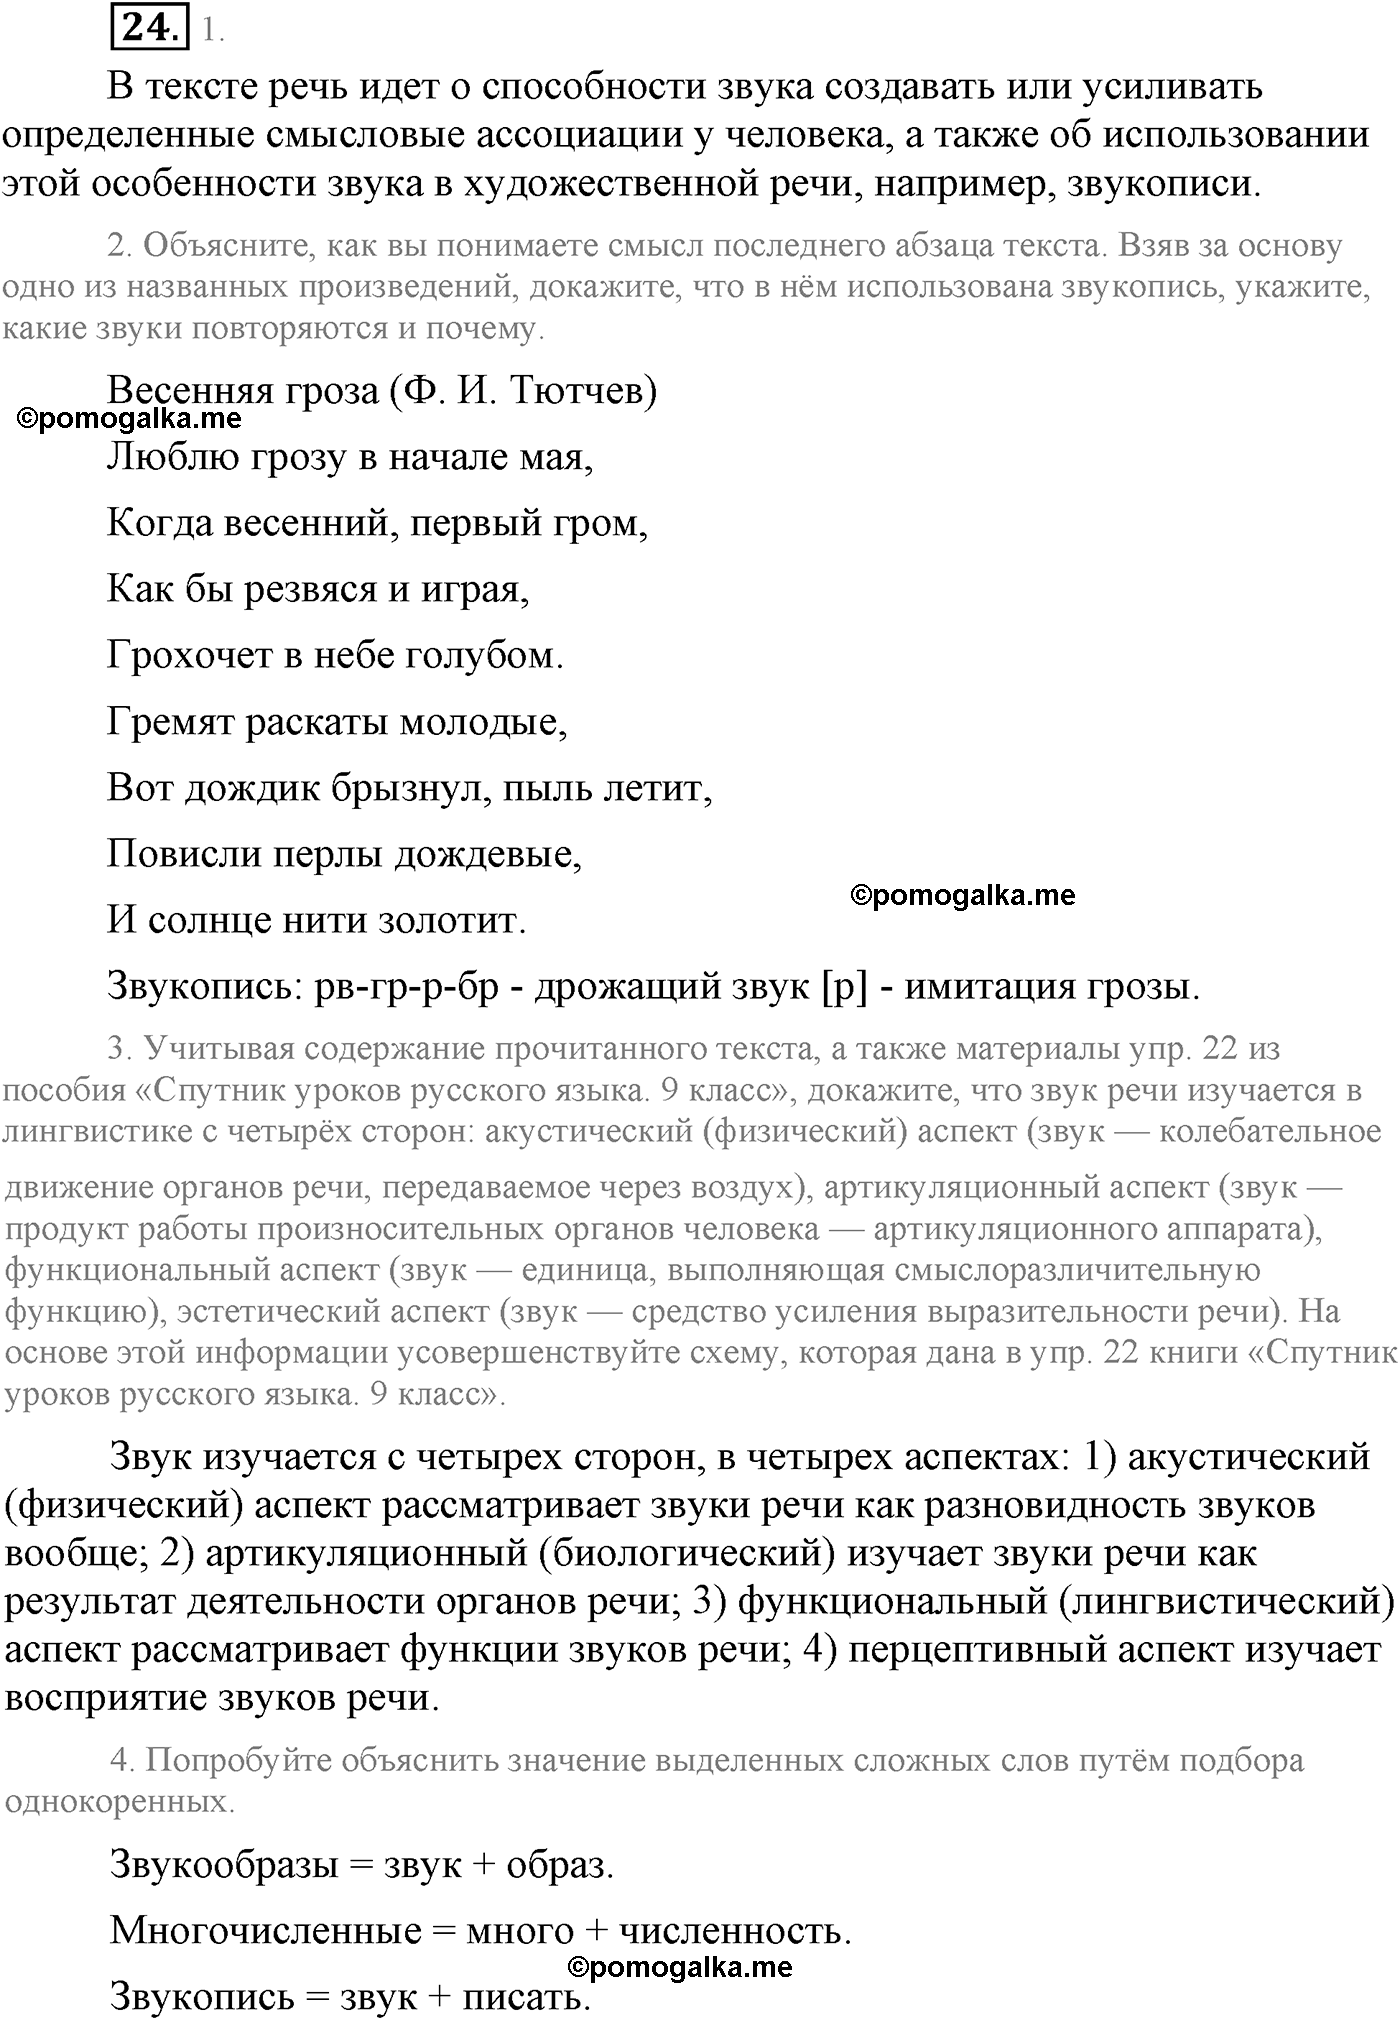 упражнение №24 русский язык 9 класс Львова